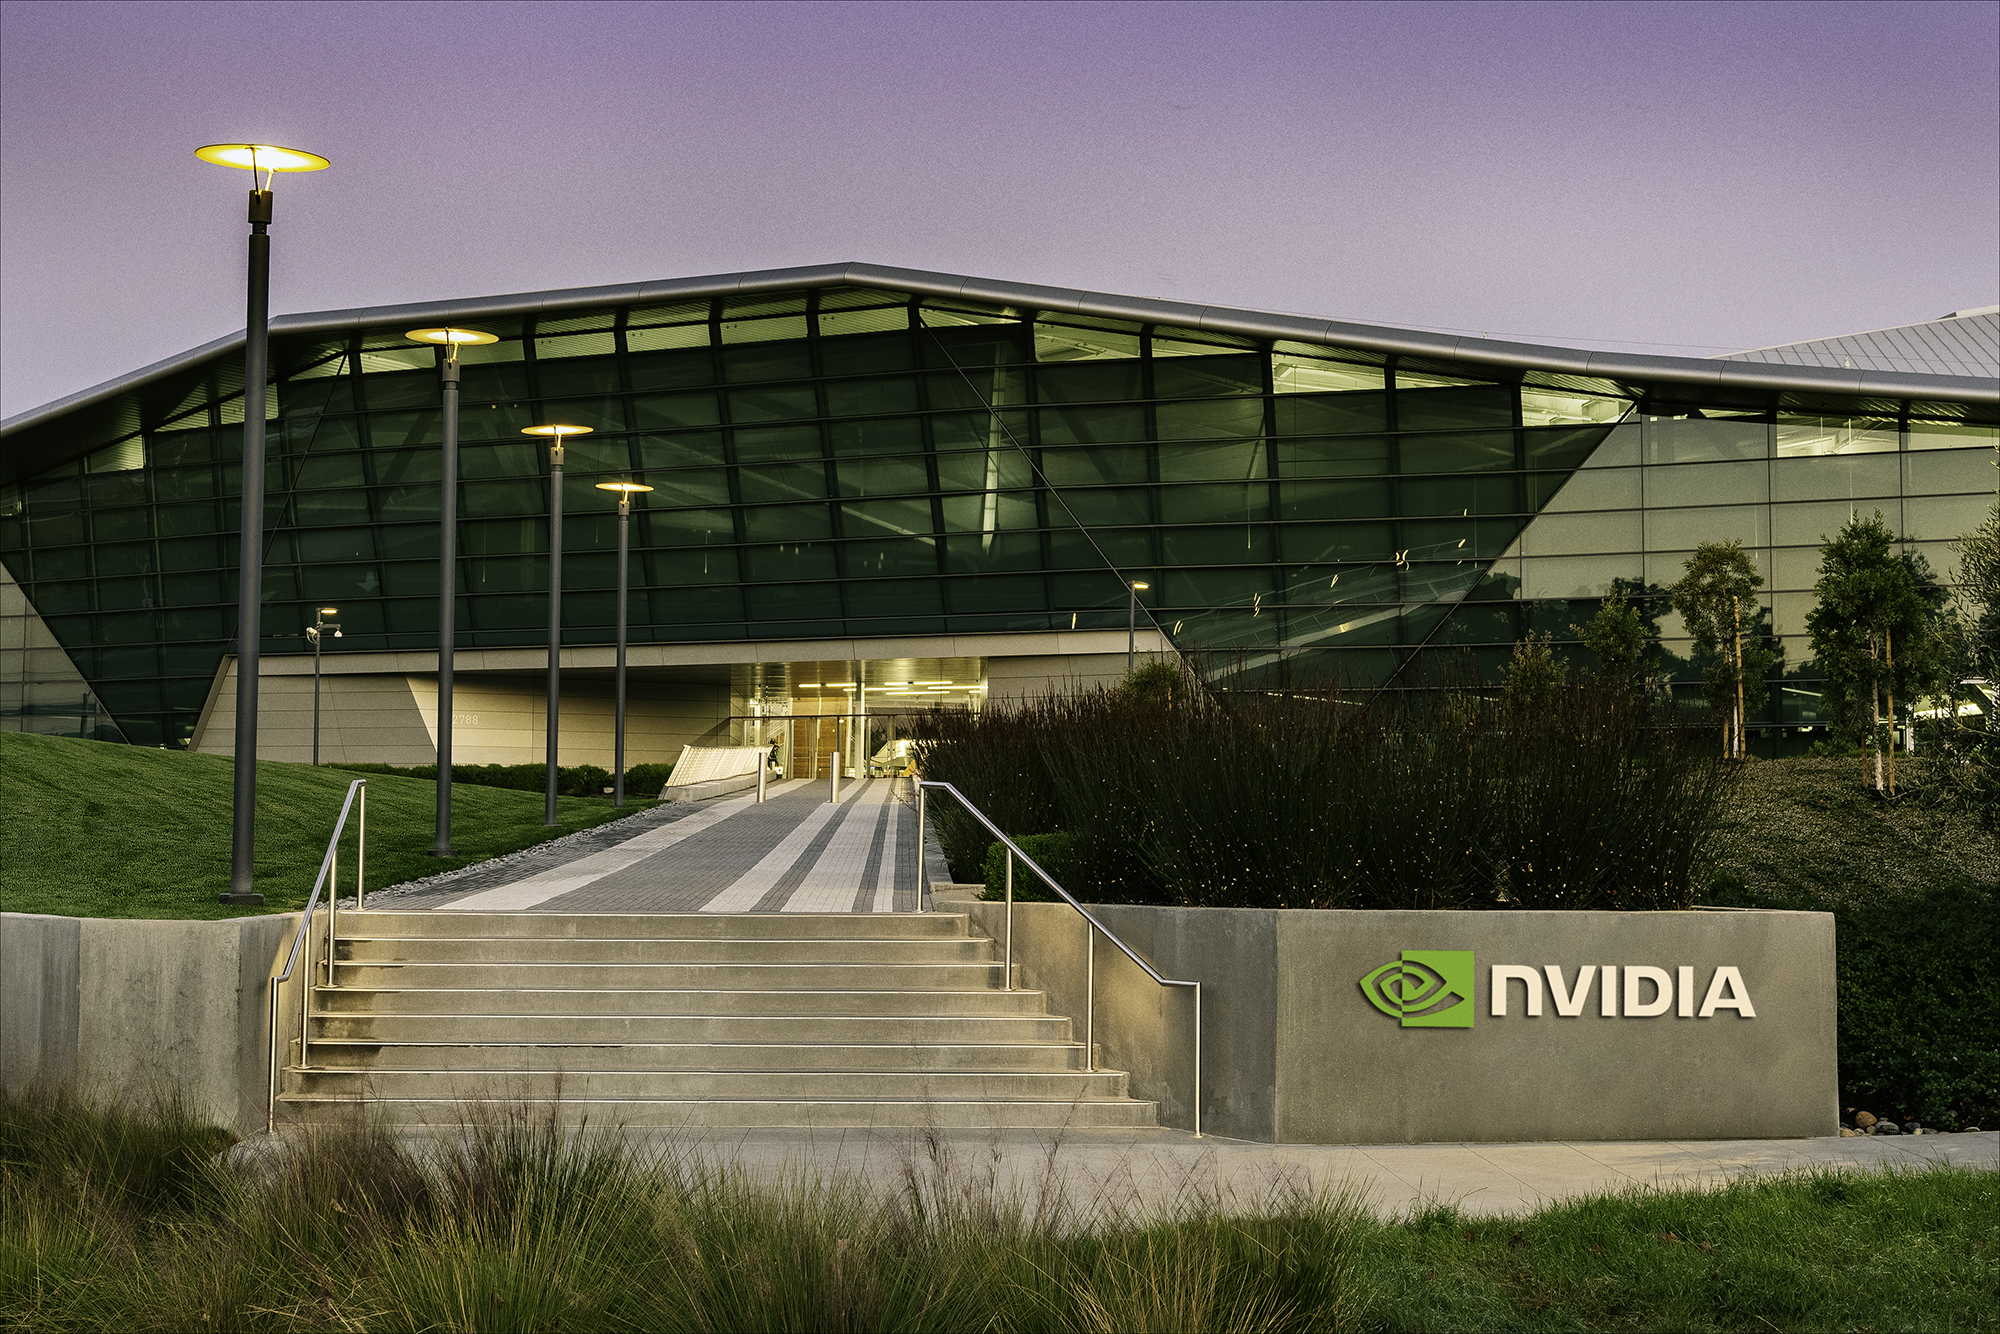 Immagine pubblicata in relazione al seguente contenuto: NVIDIA potrebbe lanciare la sua prima CPU ARM per PC nel corso del 2025 | Nome immagine: news34969_NVIDIA-Endeavor-building-logo_1.jpg